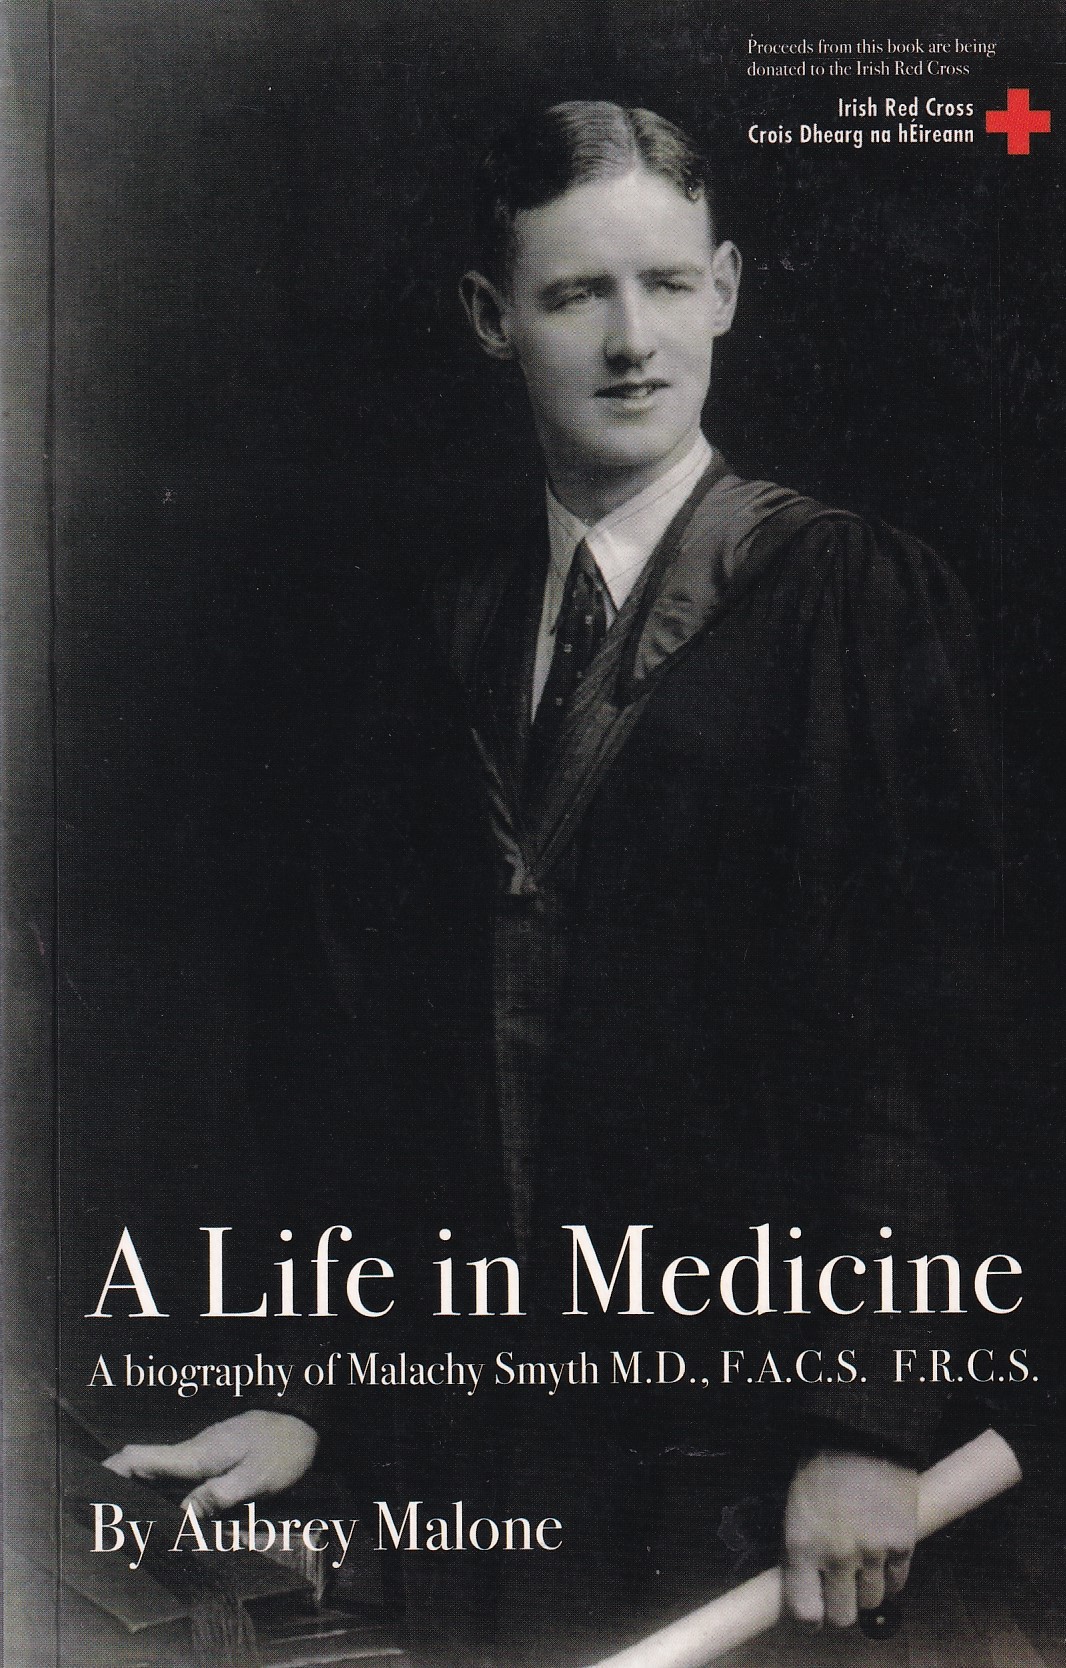 A Life in Medicine; A biography of Malachy Smyth | Aubrey Malone | Charlie Byrne's